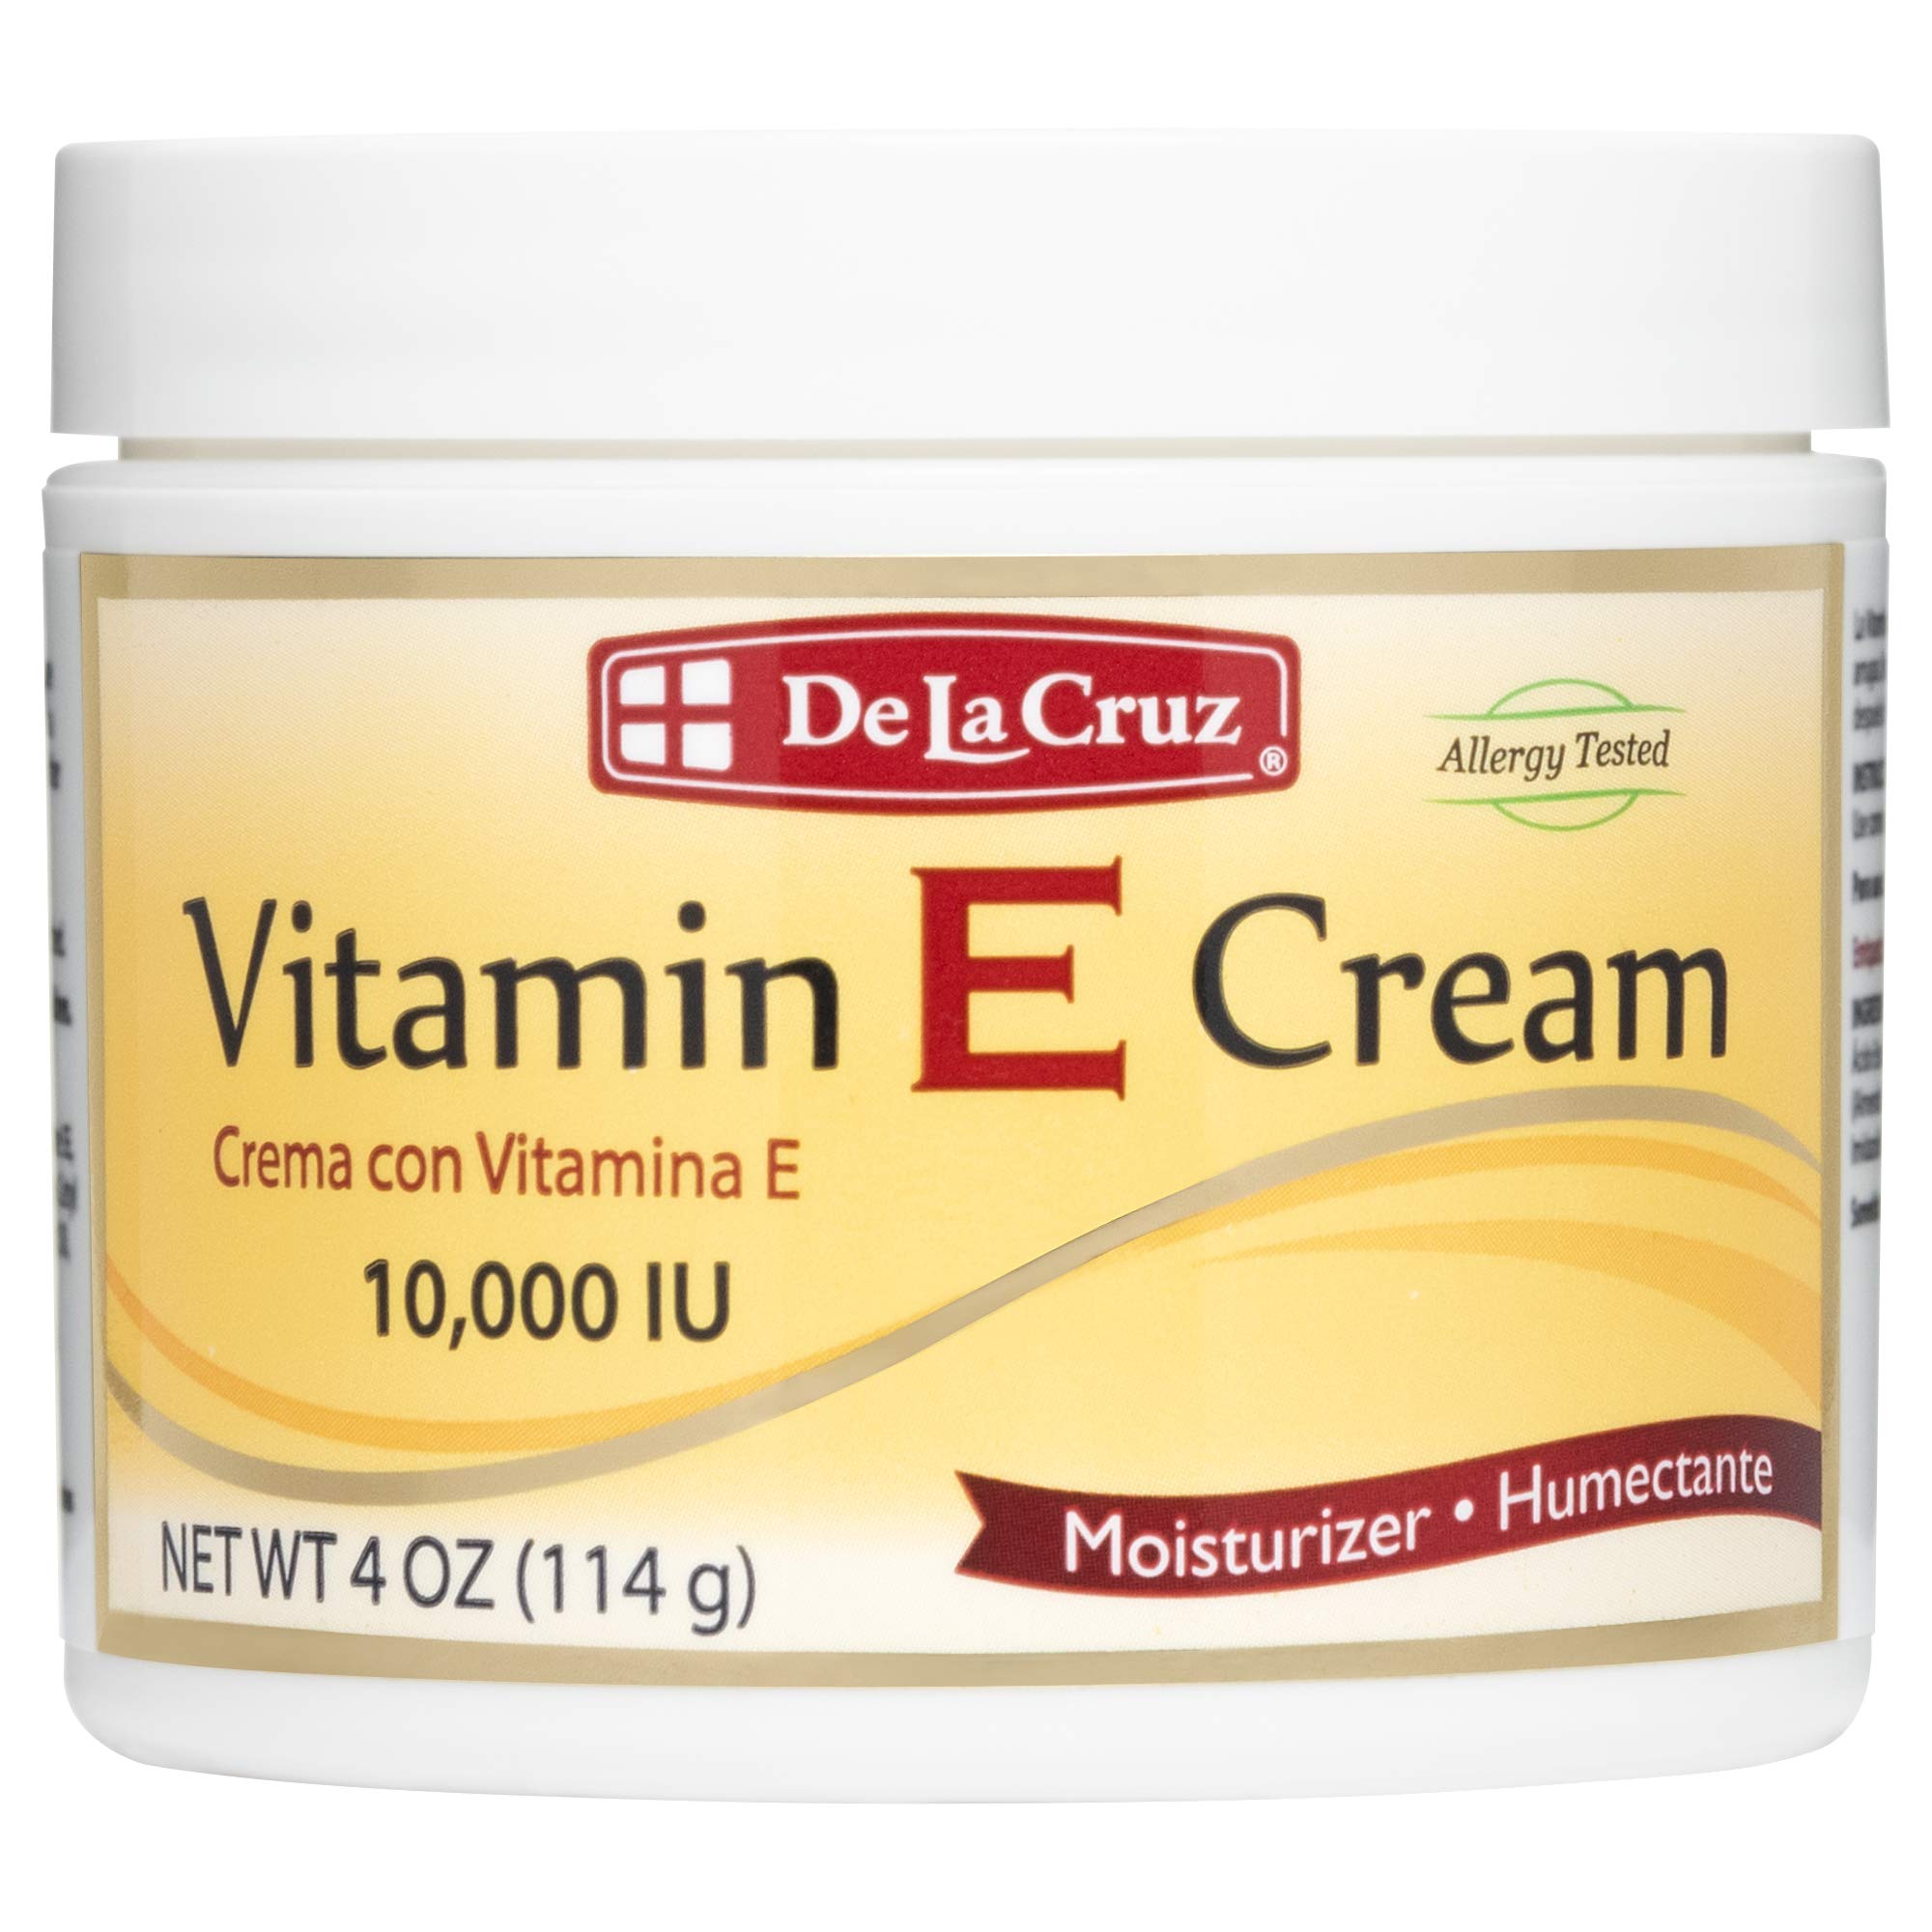  Vitamin E Cream có thể sử dụng được dưới lớp trang điểm không?
